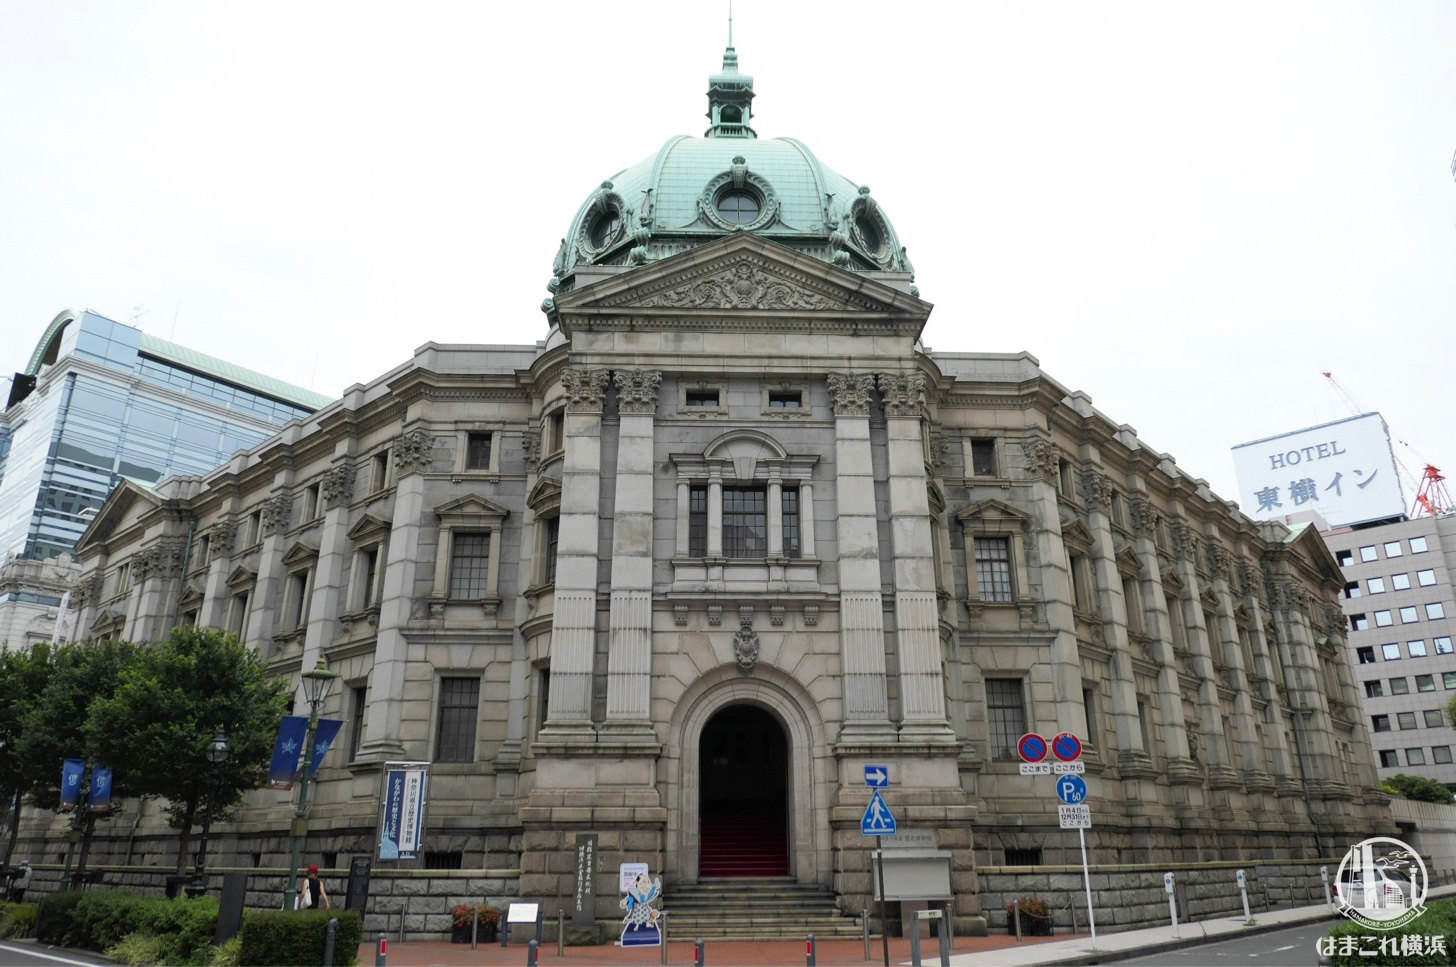 神奈川県立歴史博物館 外観